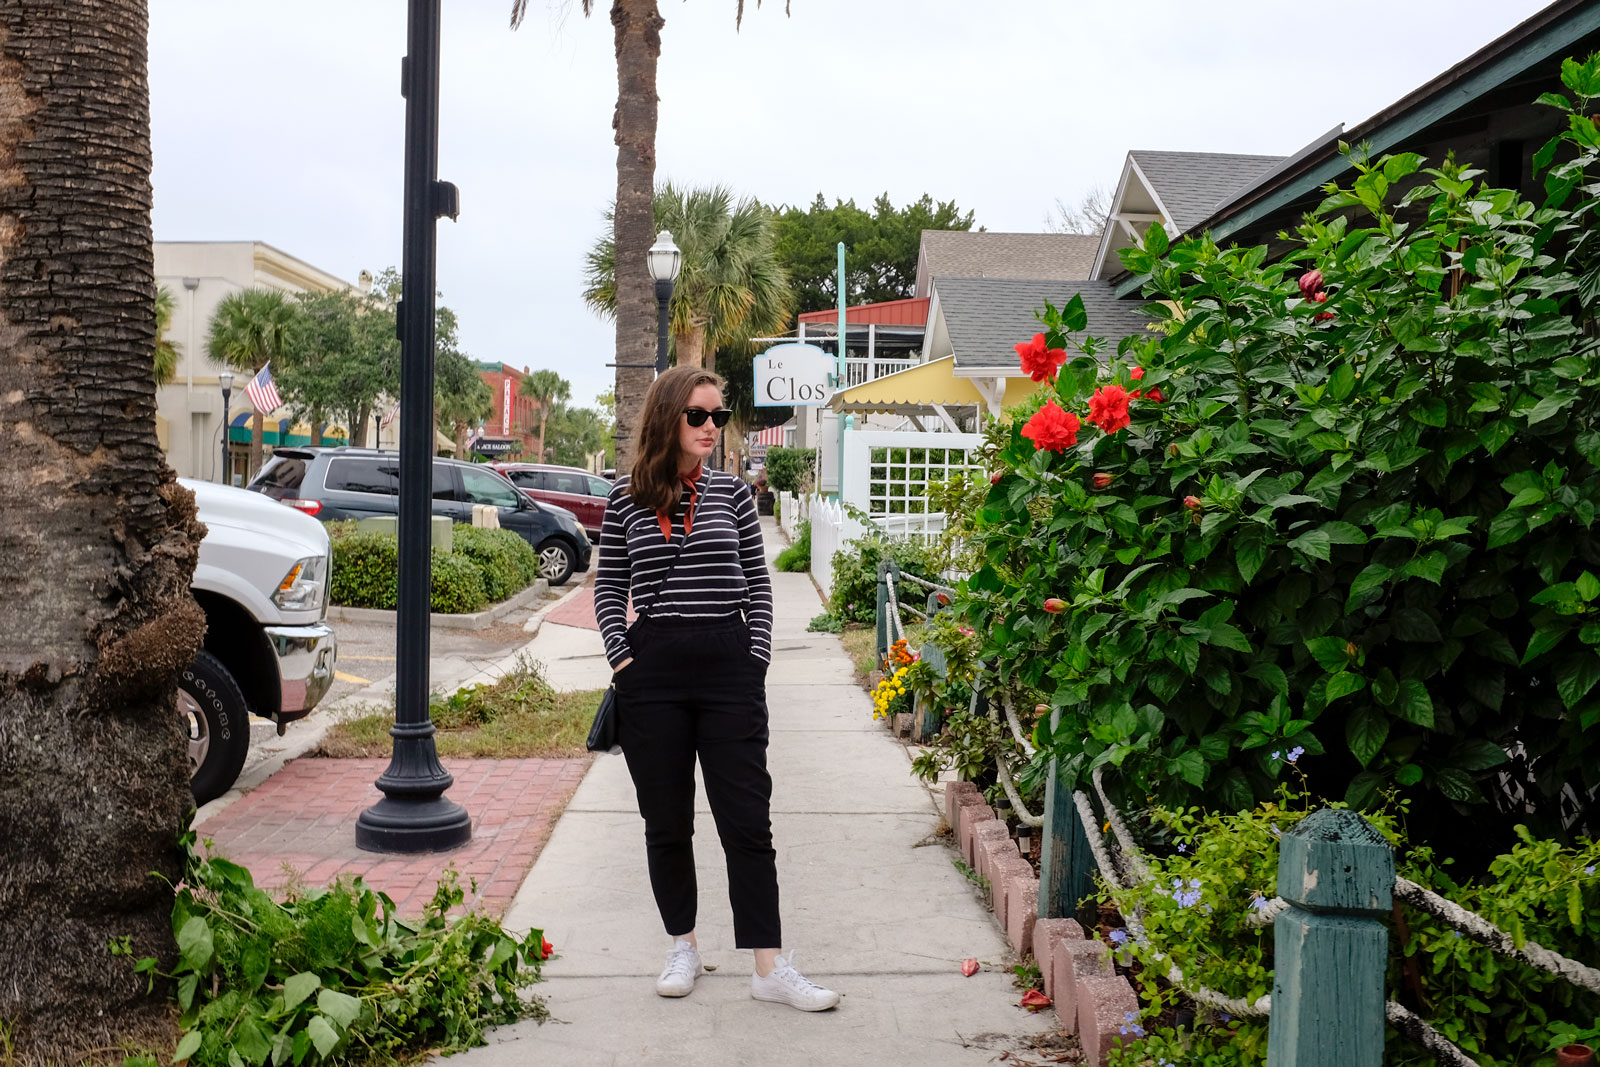 Alyssa stands on a sidewalk in Amelia Island